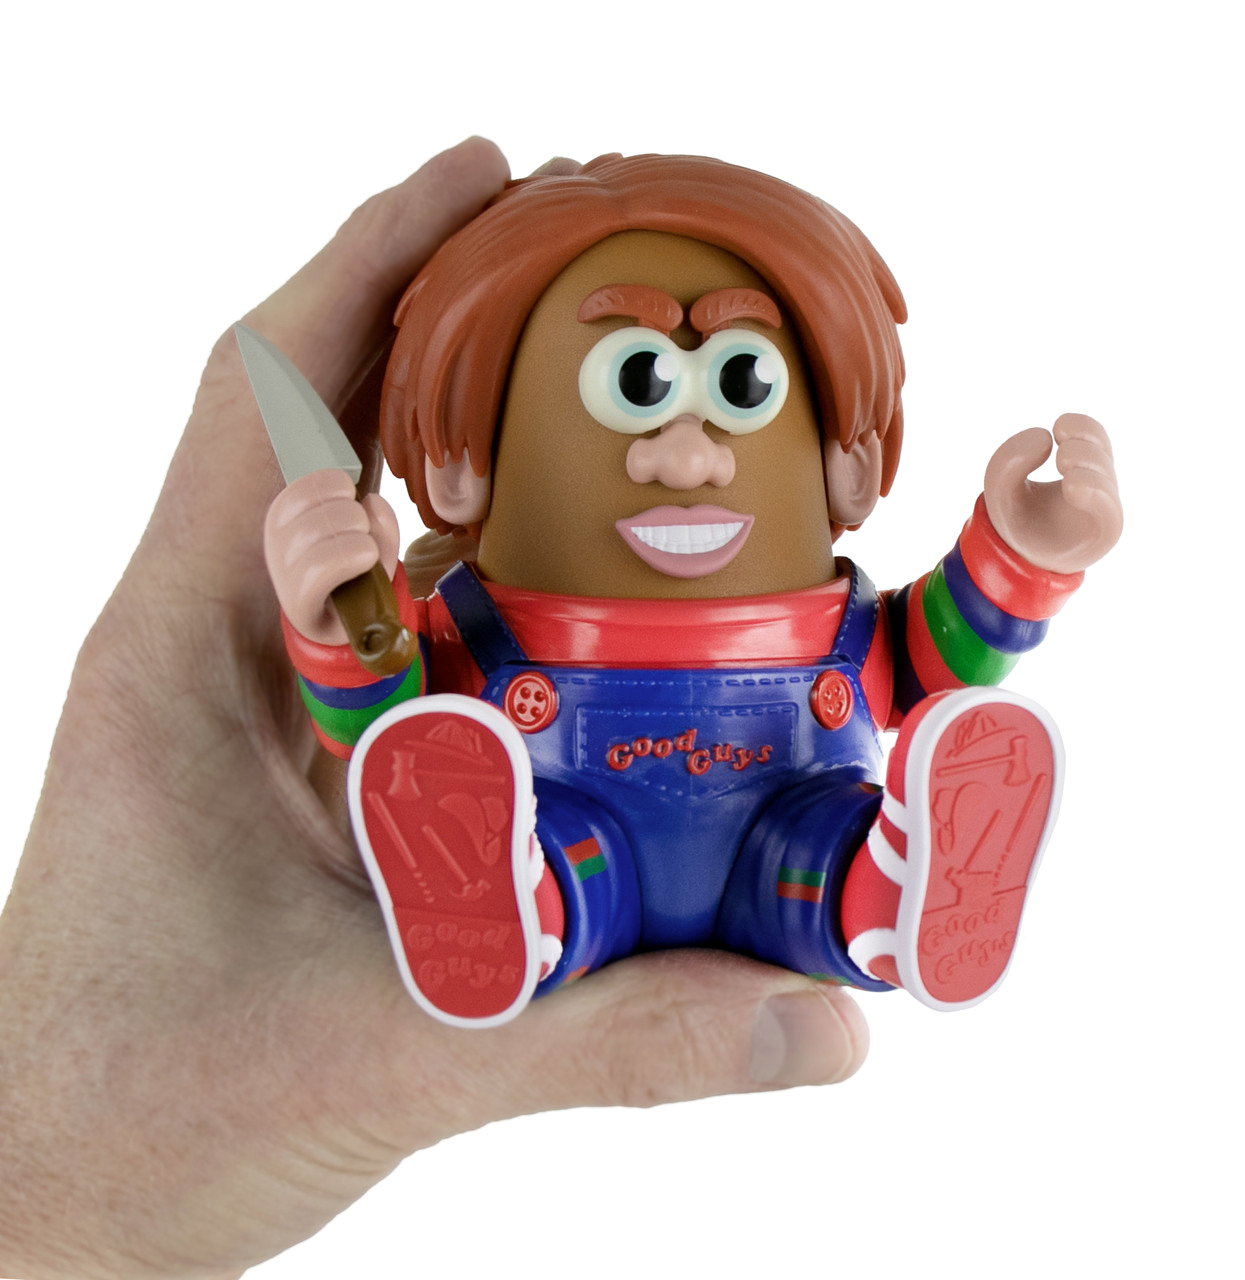 Boneco Chucky Cabeça de Batata (Child’s Play)